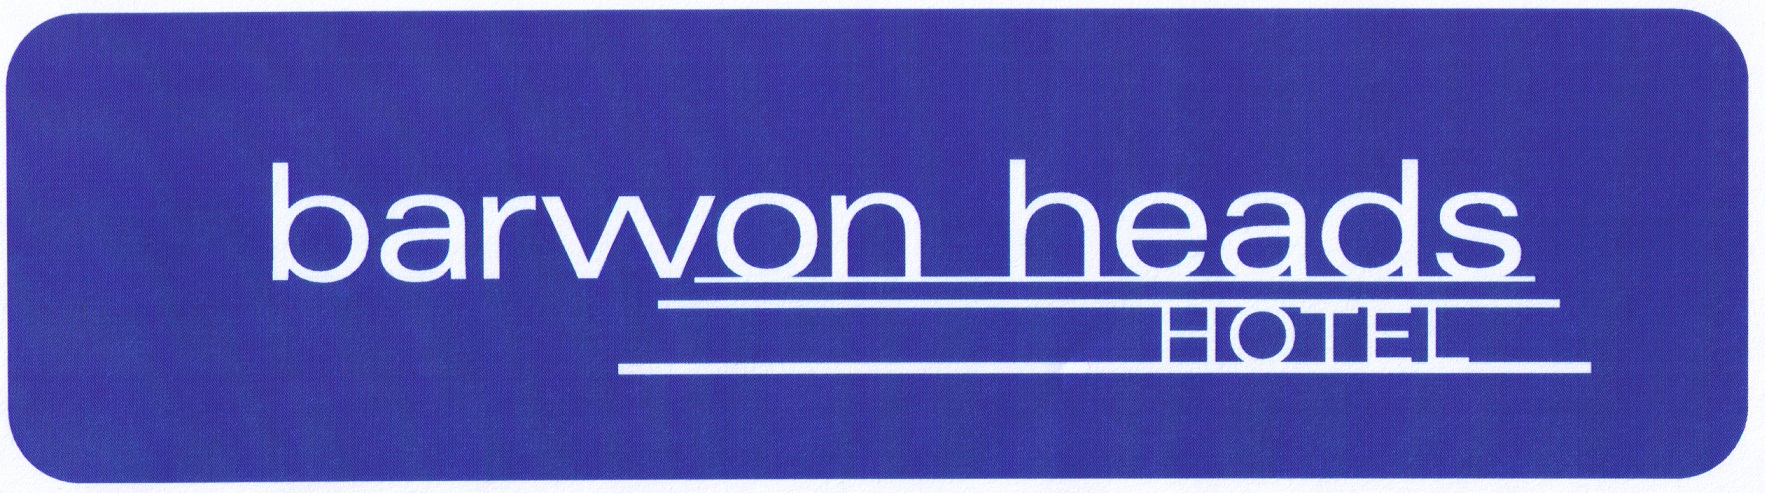 Barwon Heads Hotel - Accommodation Resorts